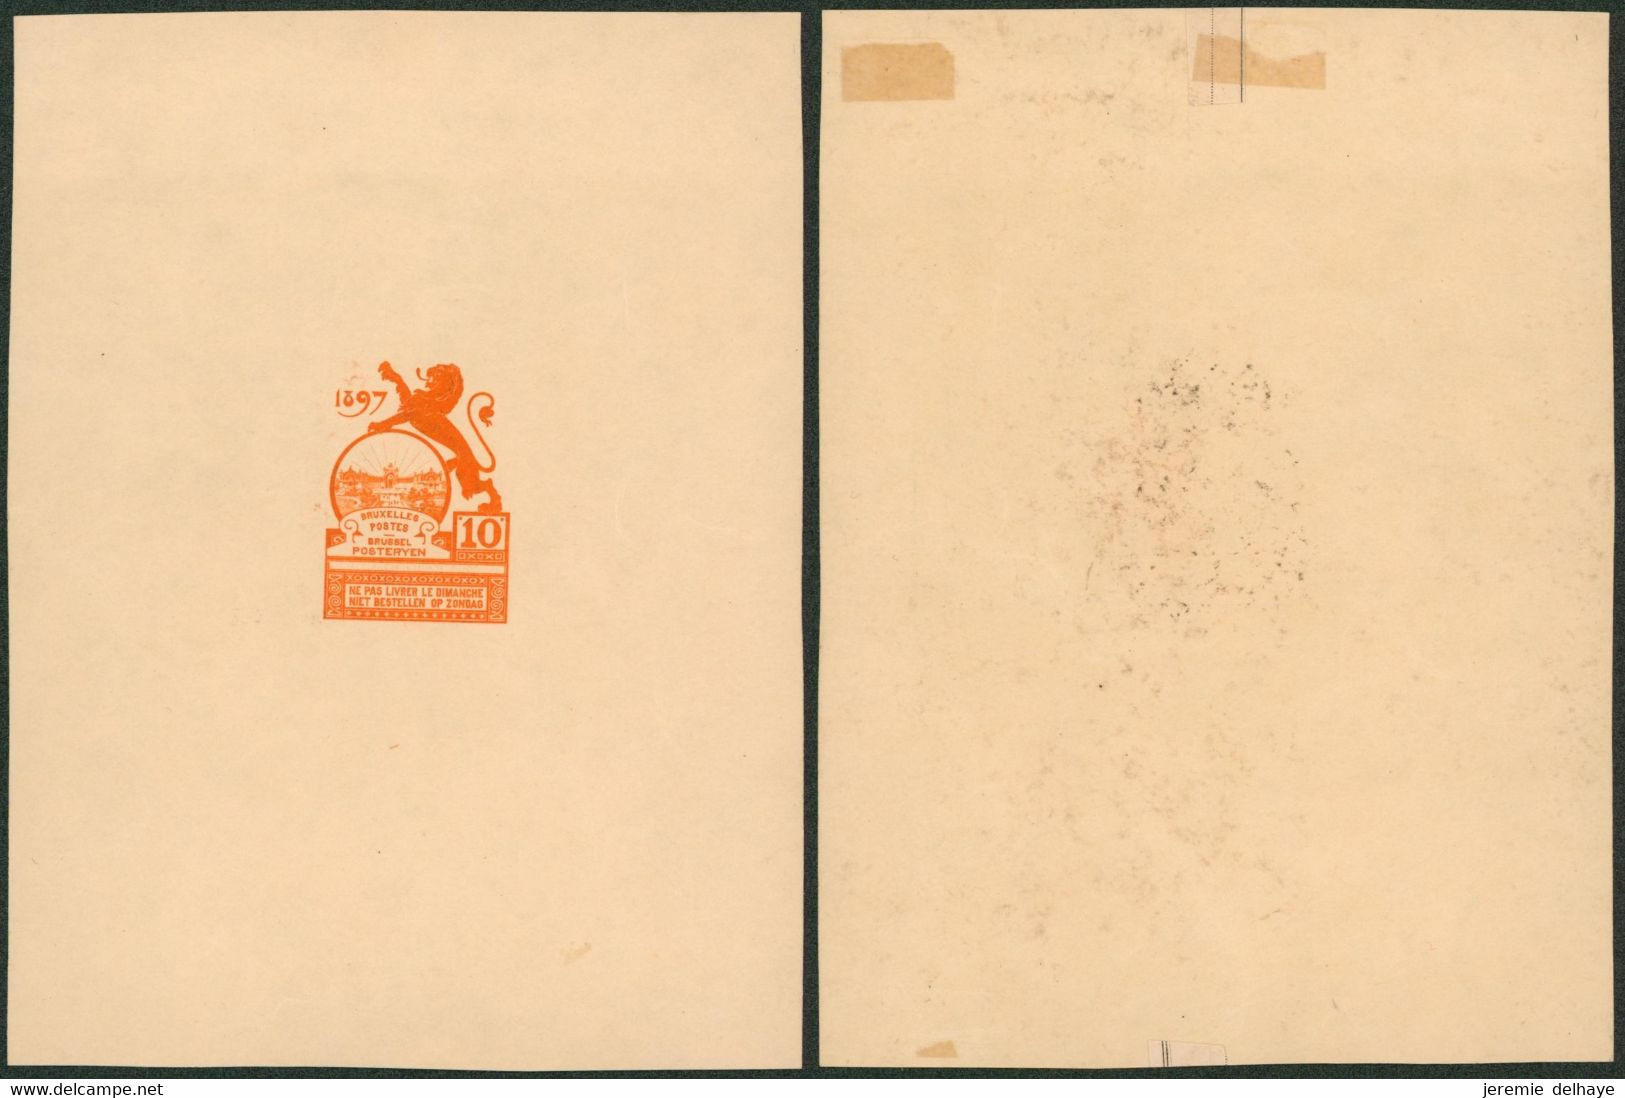 Essai - Proposition Du Peintre Louis Titz (Bruxelles Expositions 1897) Sur Papier Carton Crème (1 Couleur) : STES 2220 - Essais & Réimpressions